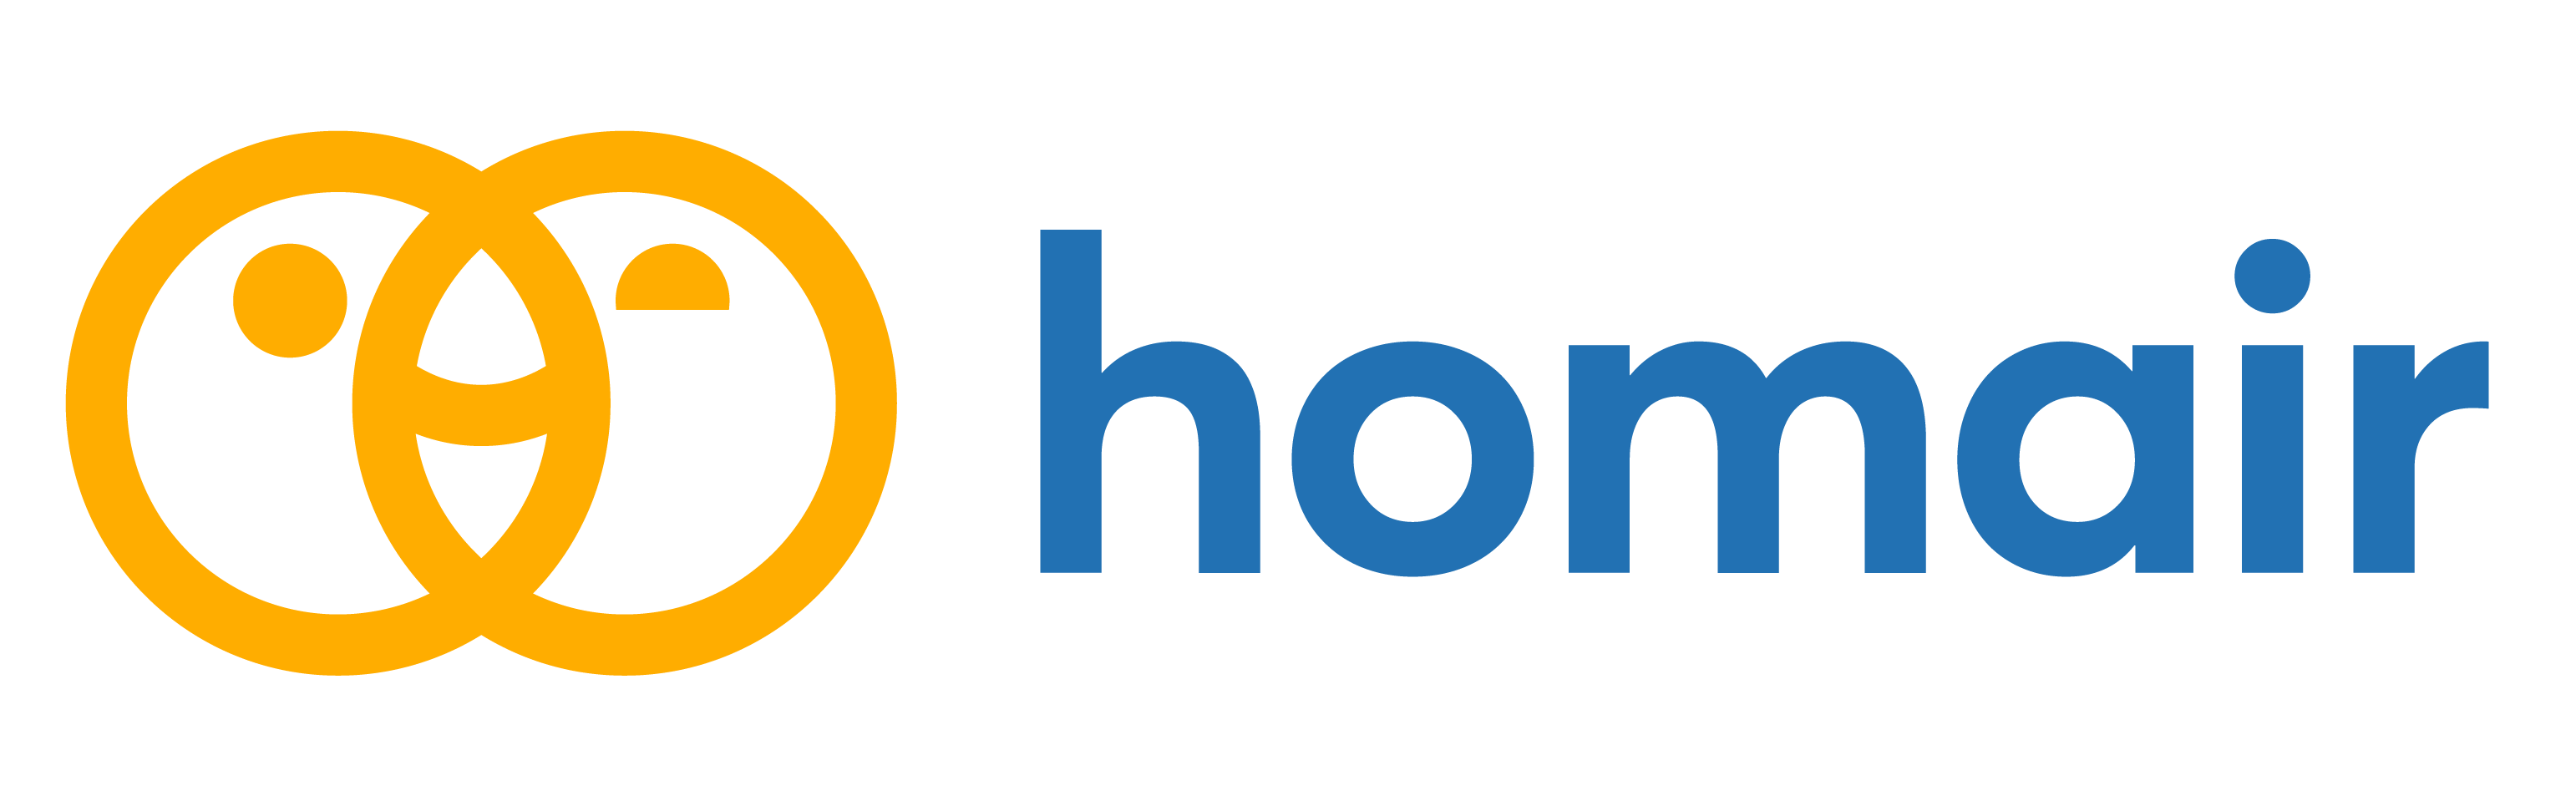 Homair : Brand Short Description Type Here.